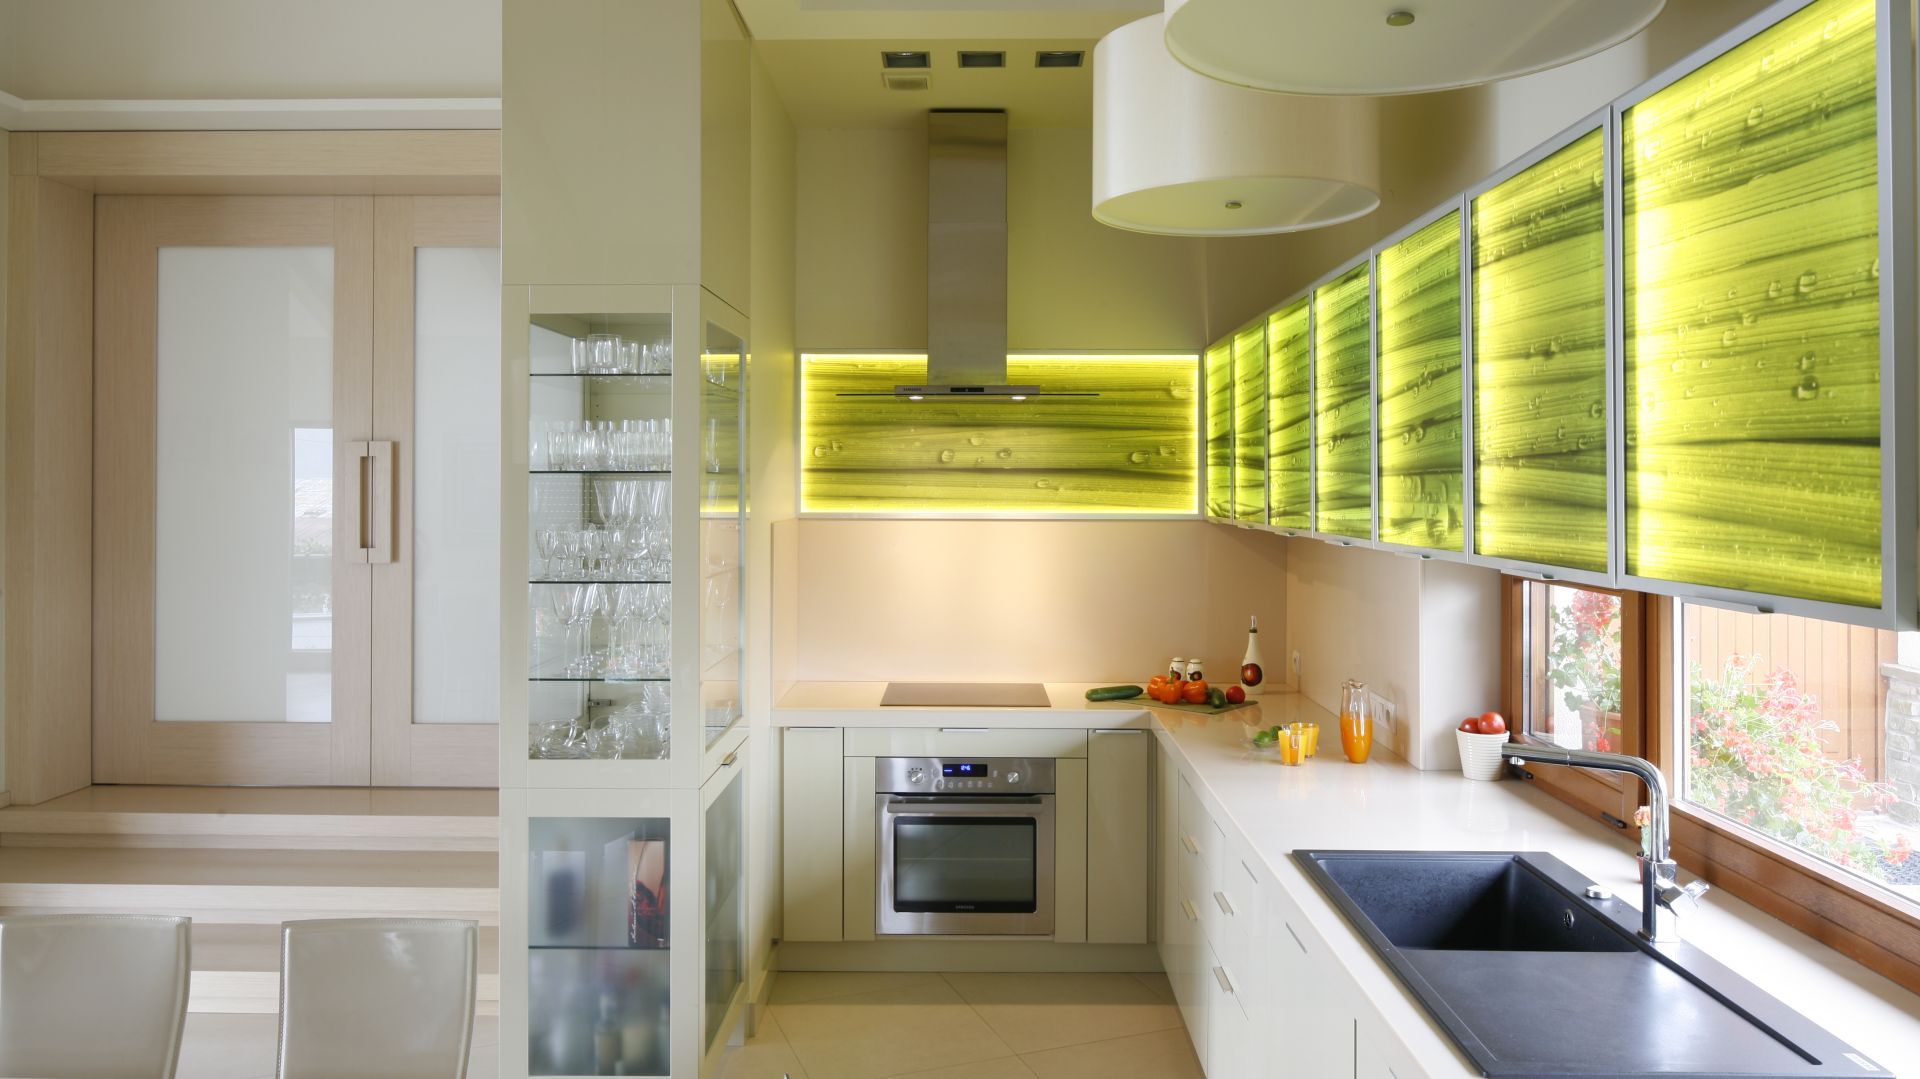 Pomysł na szafki kuchenne: dekoracyjne szklane fronty